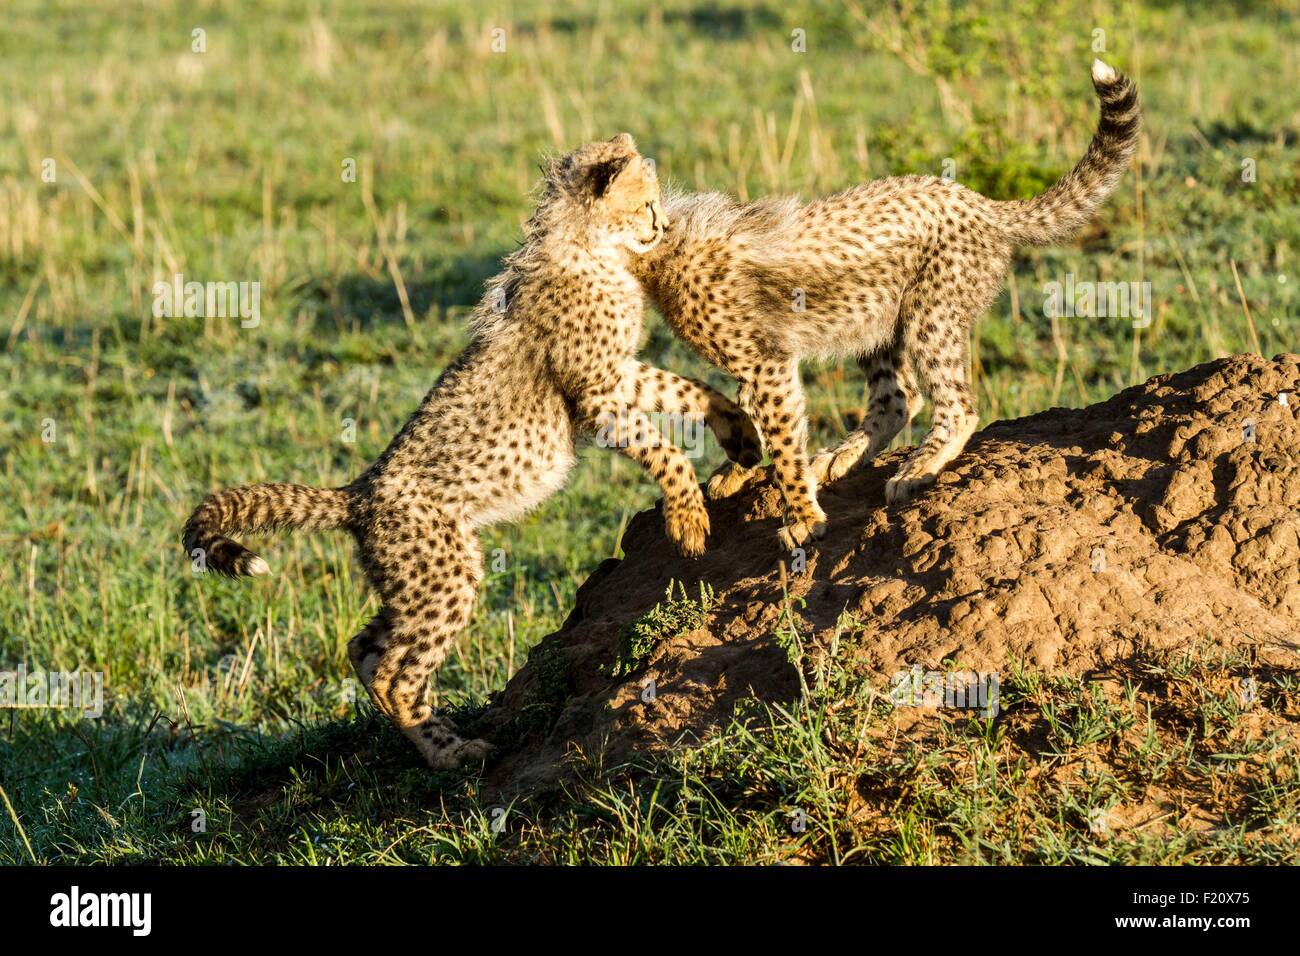 Kenia, Masai Mara Wildreservat, Gepard (Acinonyx Jubatus), Jungen spielen 4 Monate alt Stockfoto